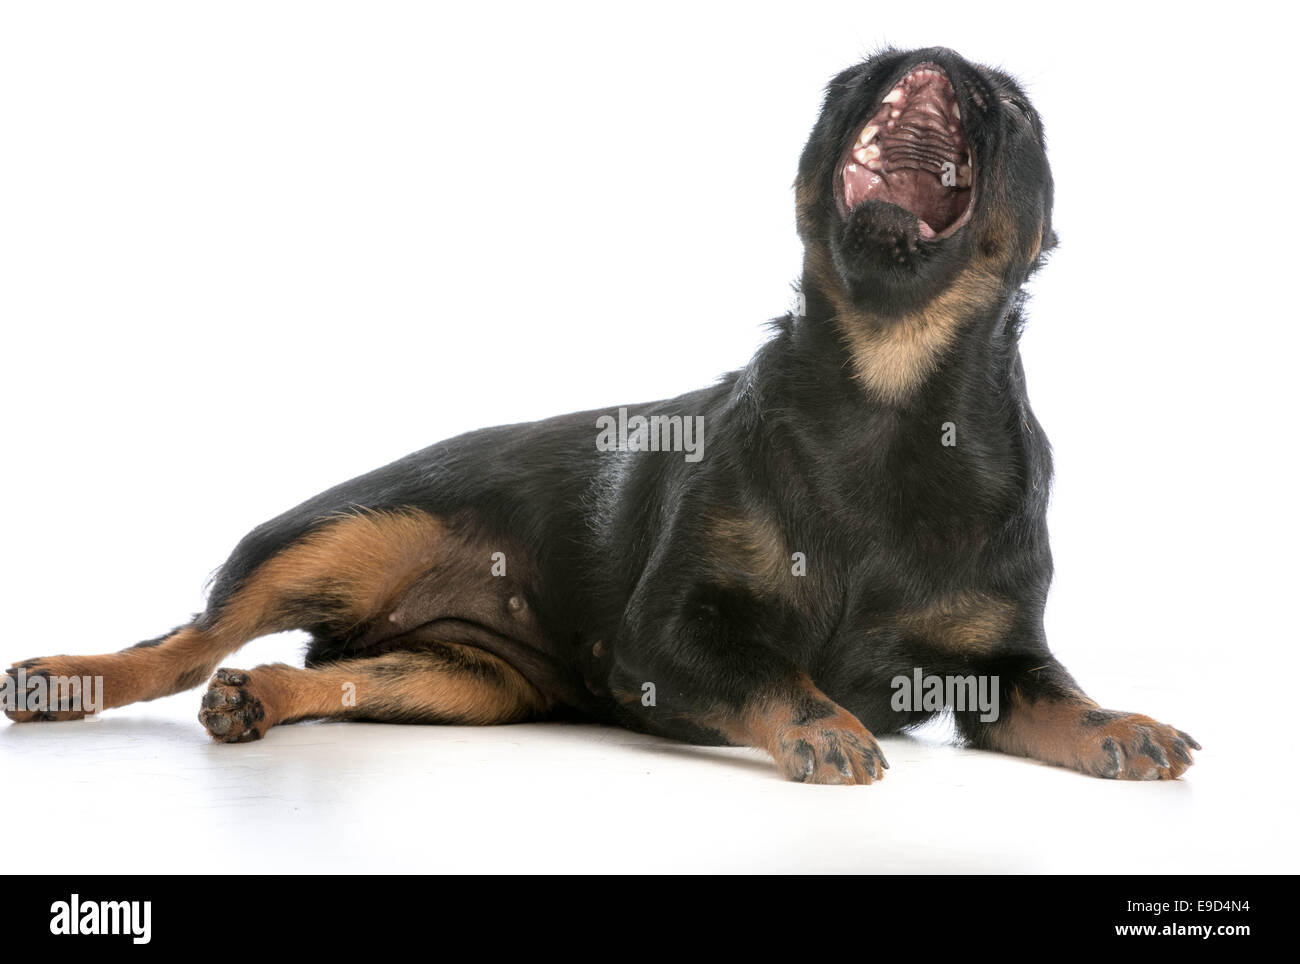 Hunde Gähnen - Brüsseler Griffon mit Mund öffnen Gähnen auf weißem Hintergrund Stockfoto